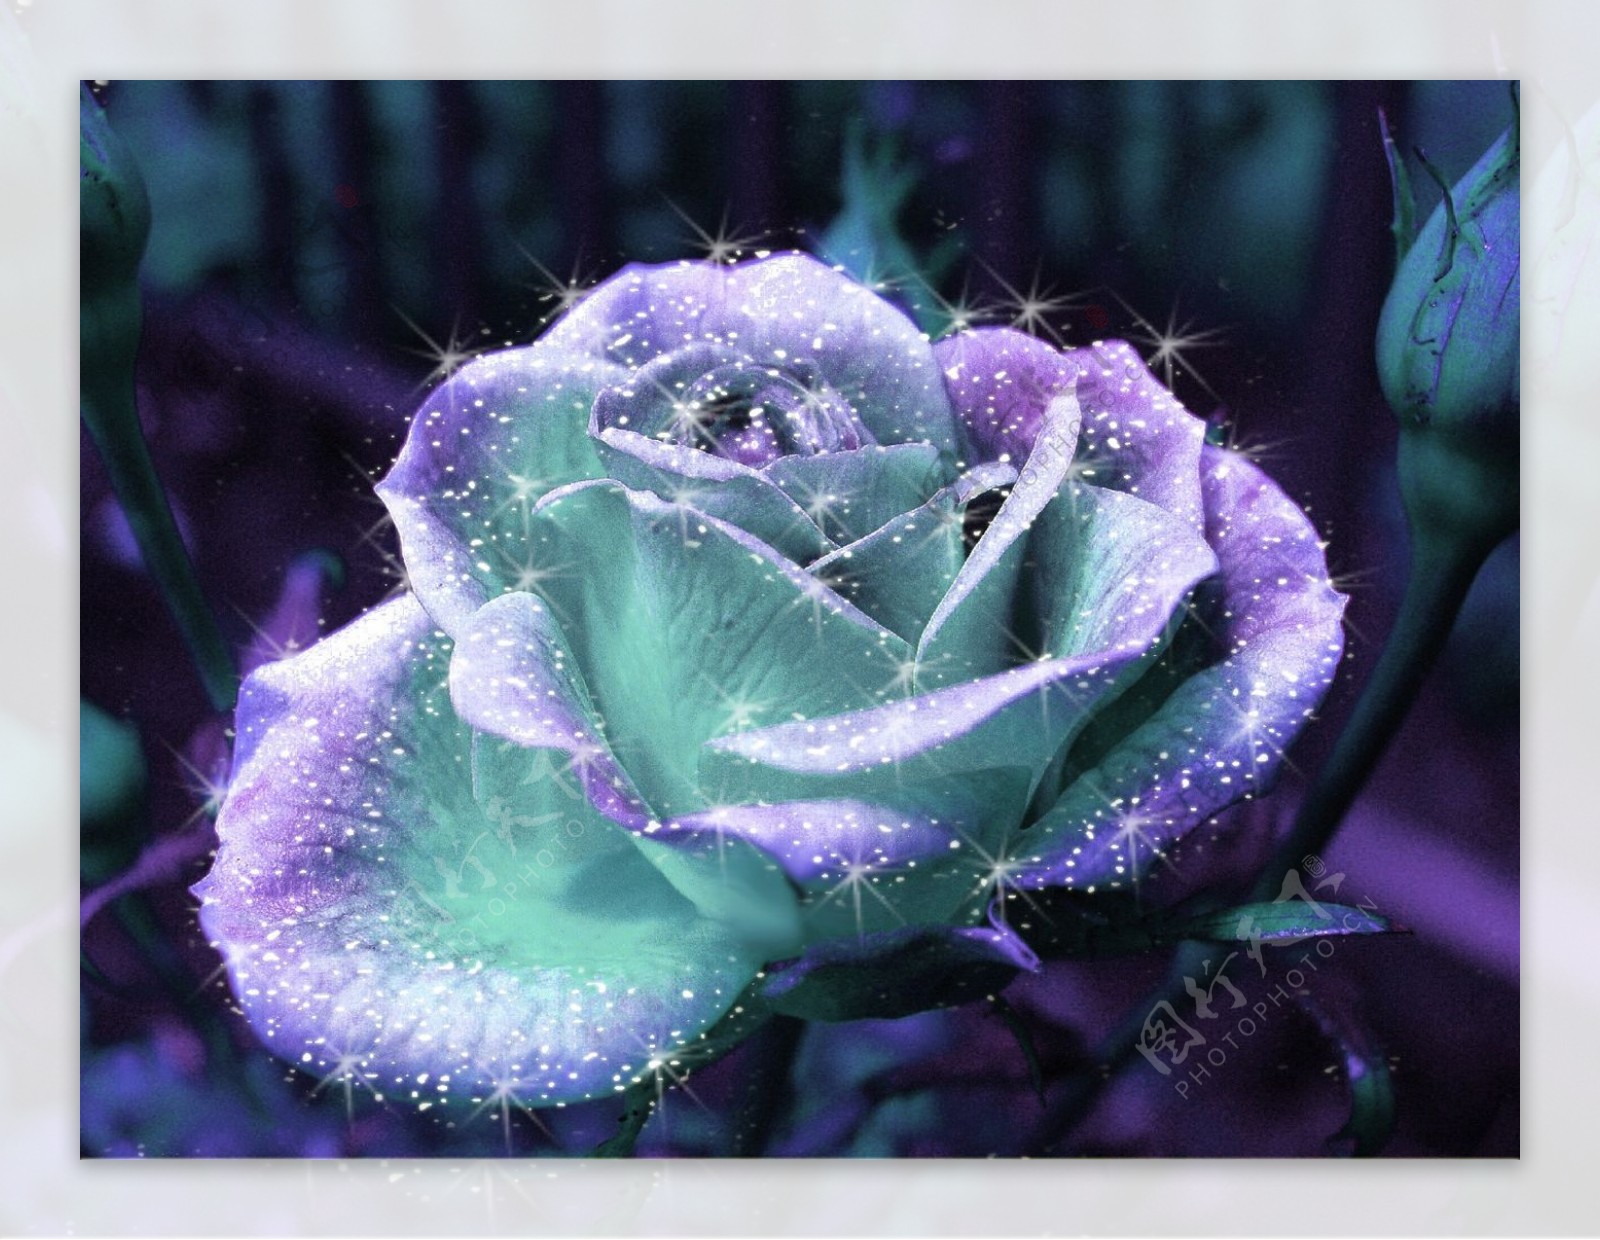 位图植物摄影写实花卉花朵蓝玫瑰免费素材